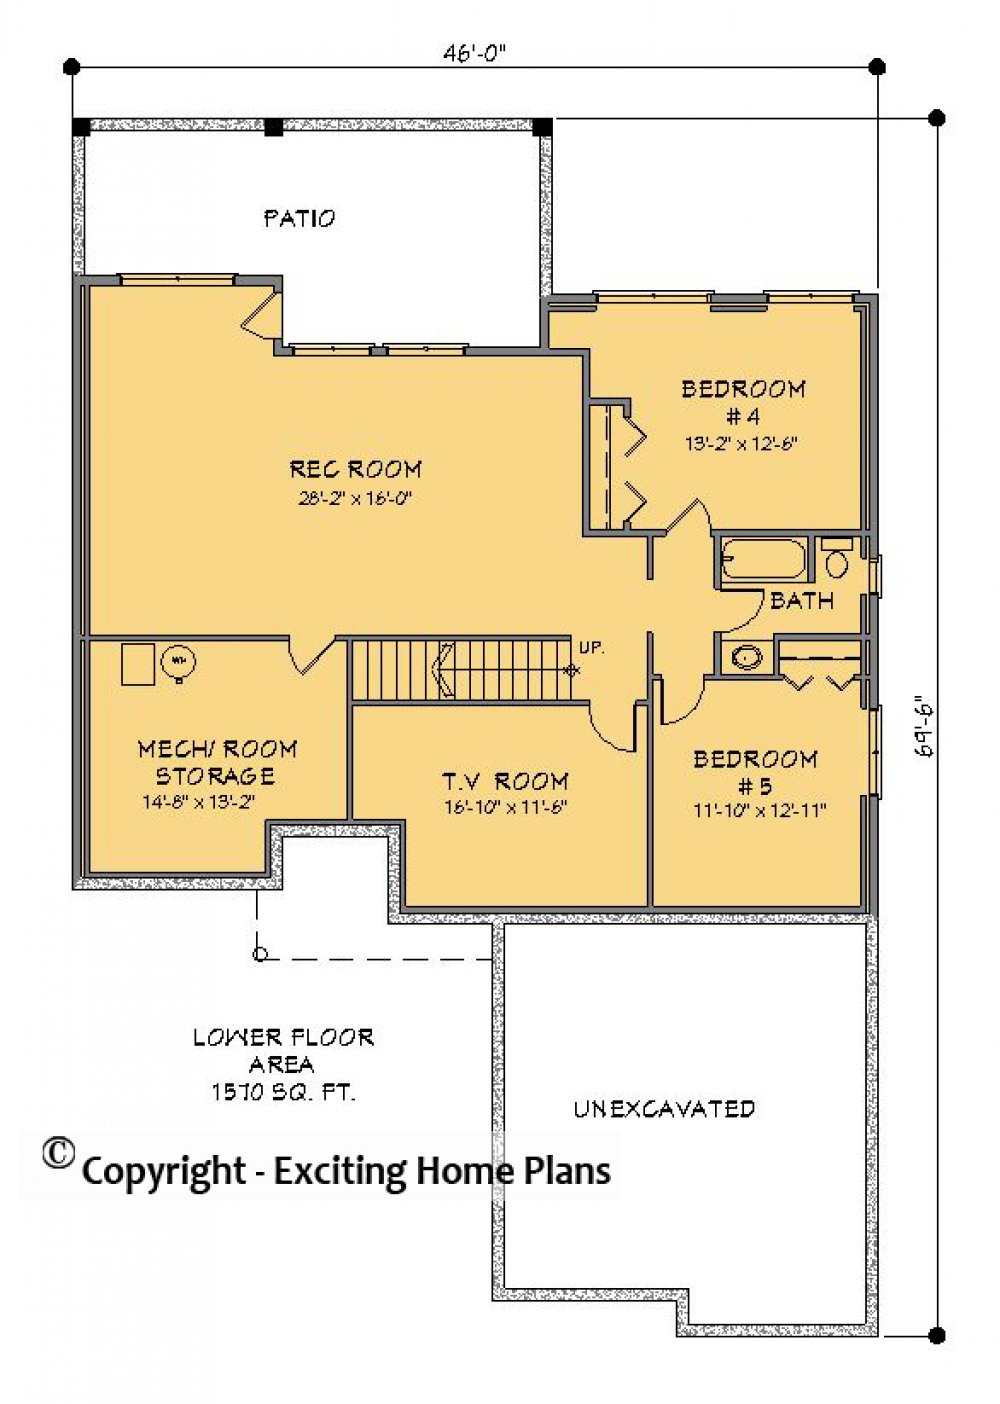 House Plan E1317-10 Lower Floor Plan